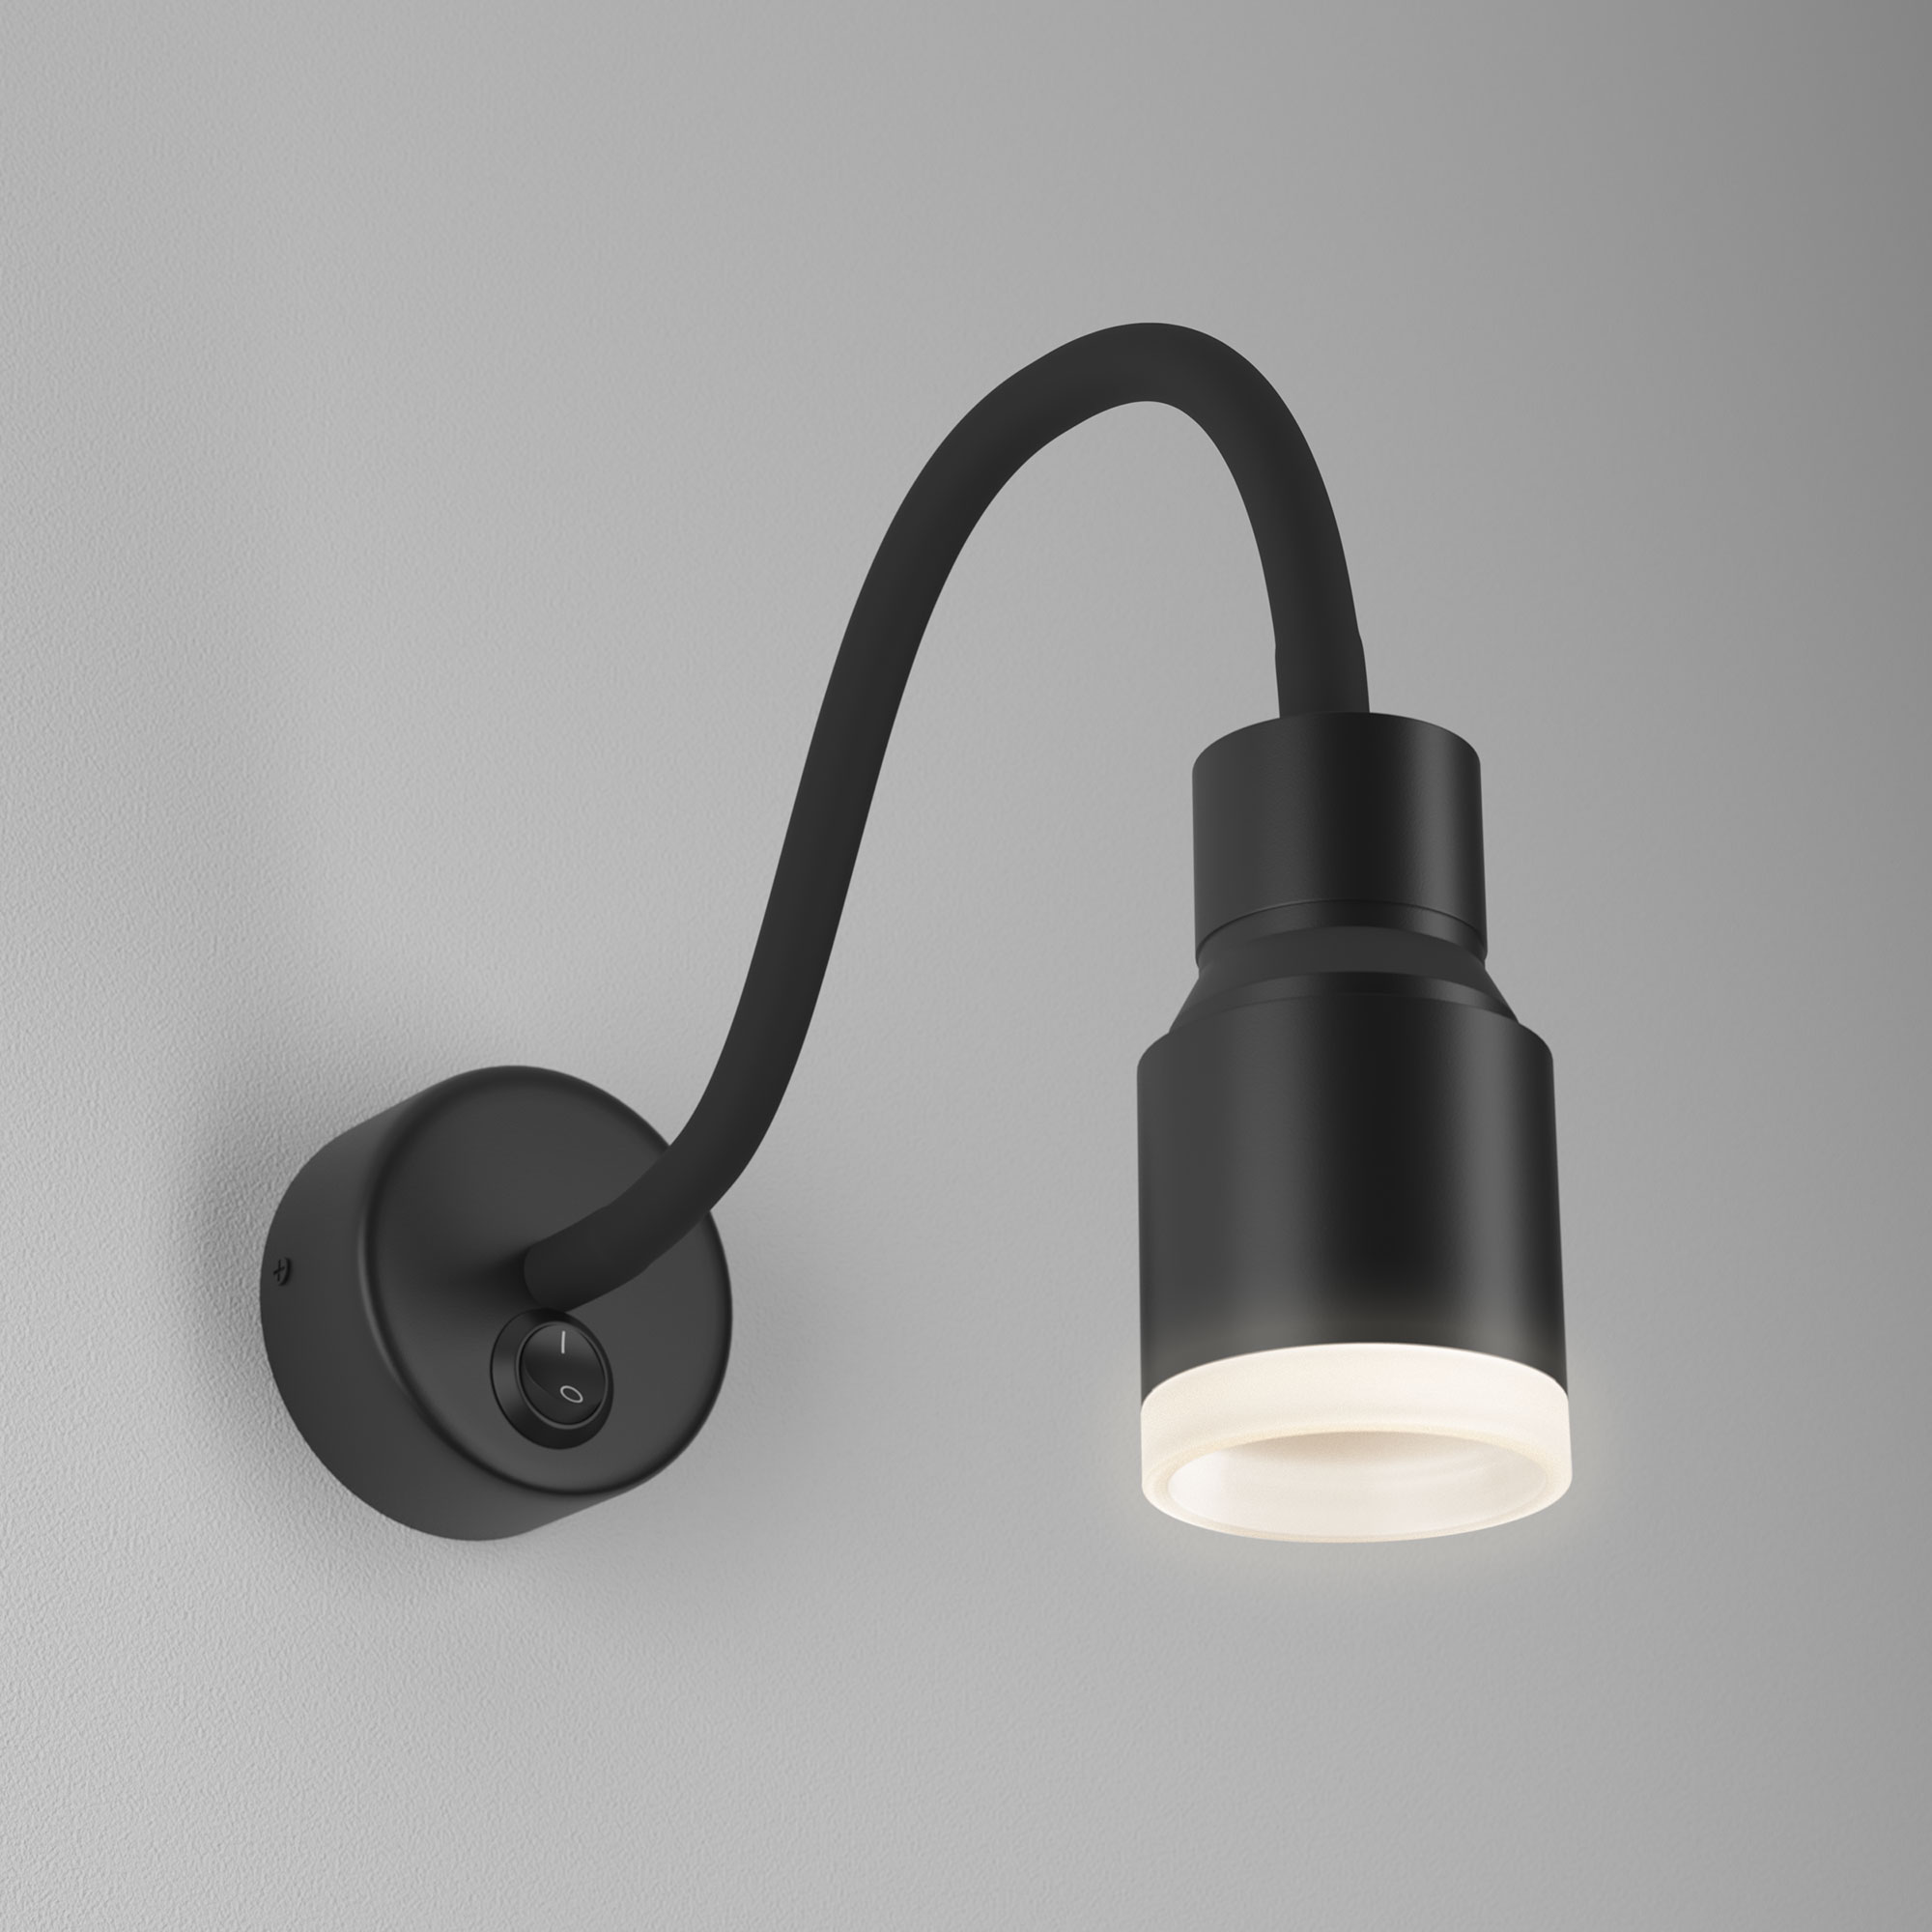 Дизайнерские светильники Designheure из Франции, цены, фото | интернет-магазин Romatti в Москве